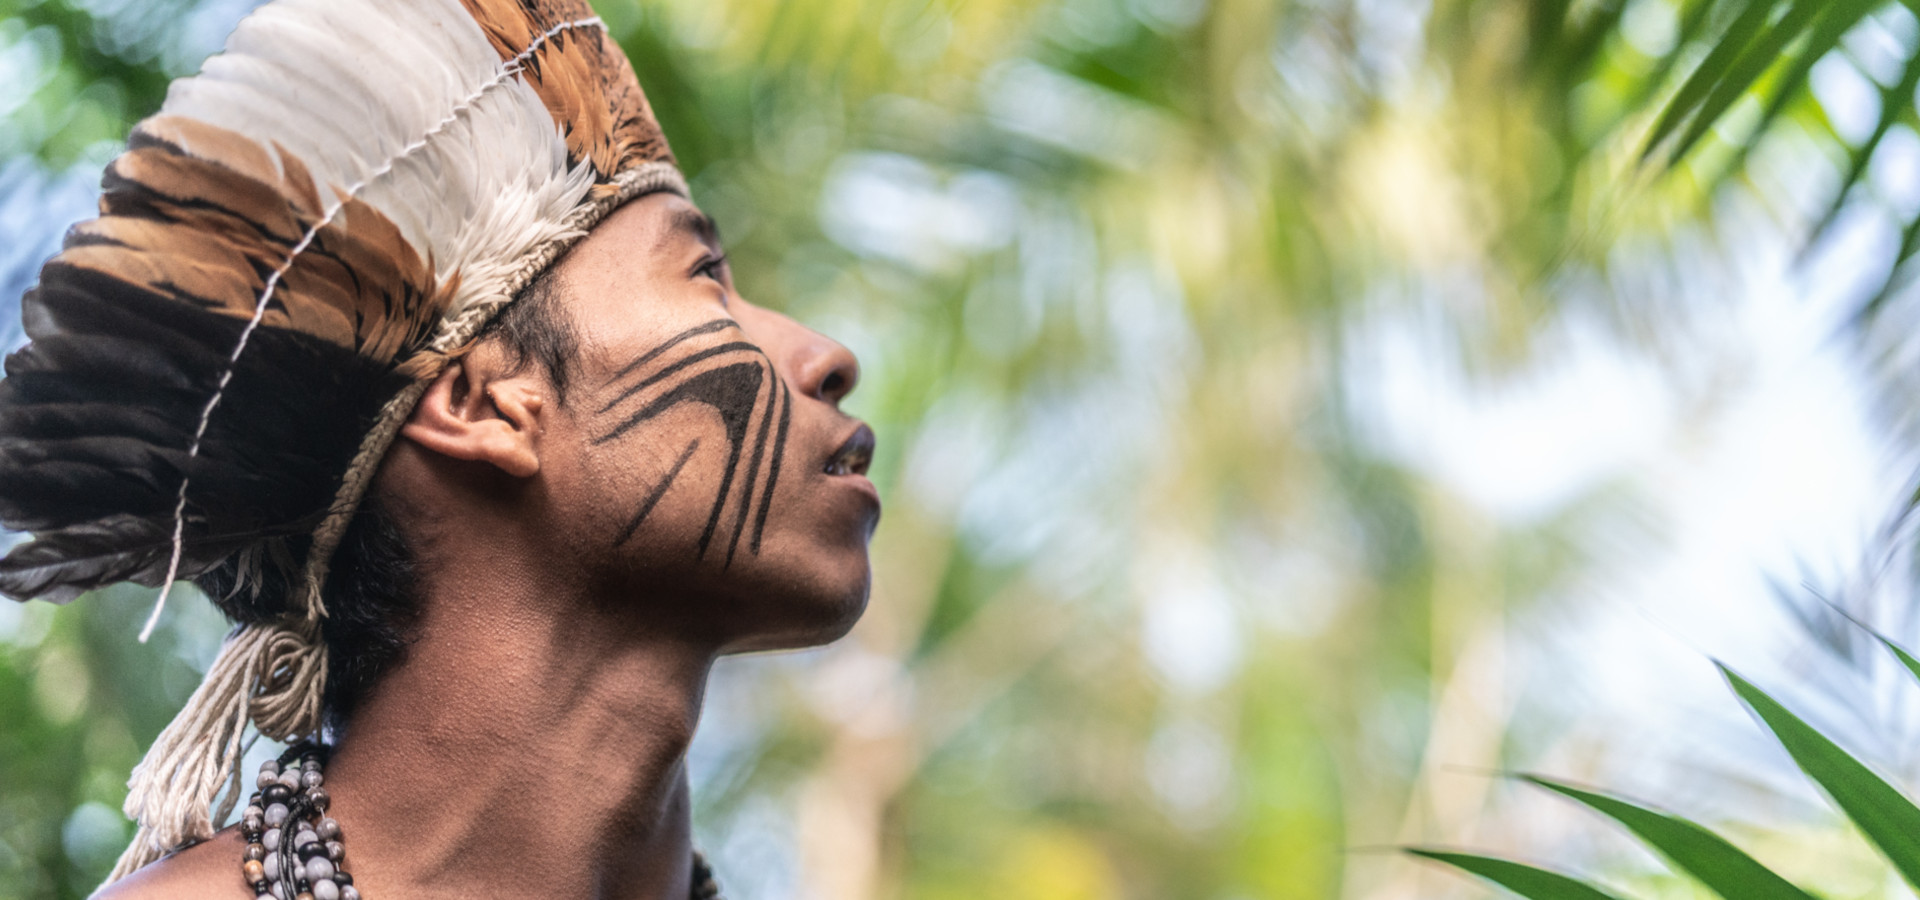 Retrato de joven indígena del pueblo Guaraní de Brasil en la selva